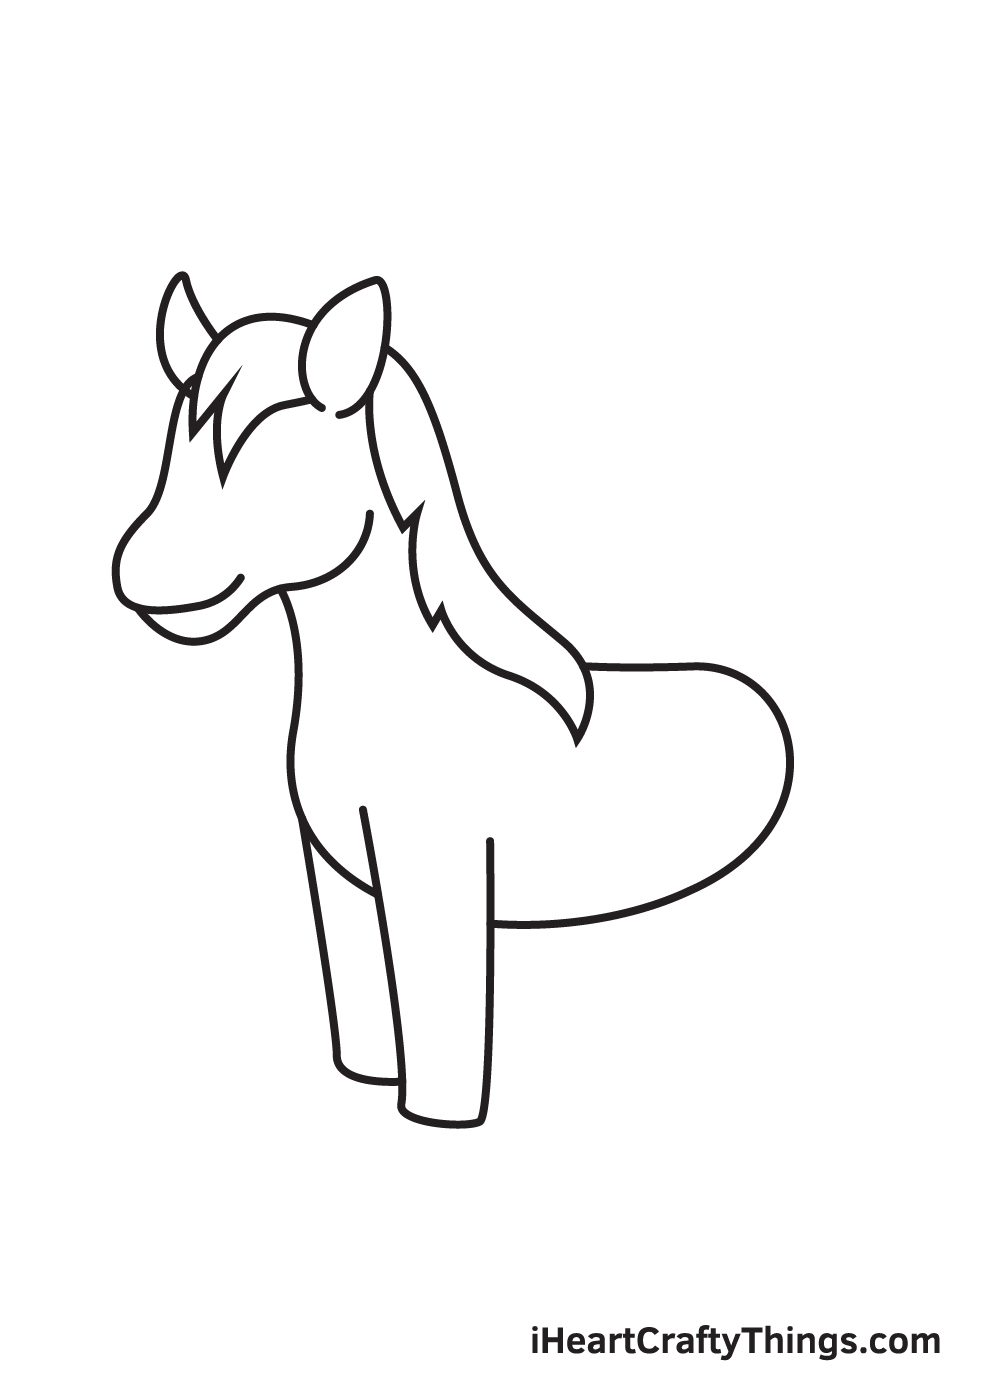 Unicorn DRAWING – STEP 5 - Hướng dẫn chi tiết cách vẽ con lân đơn giản với 9 bước cơ bản